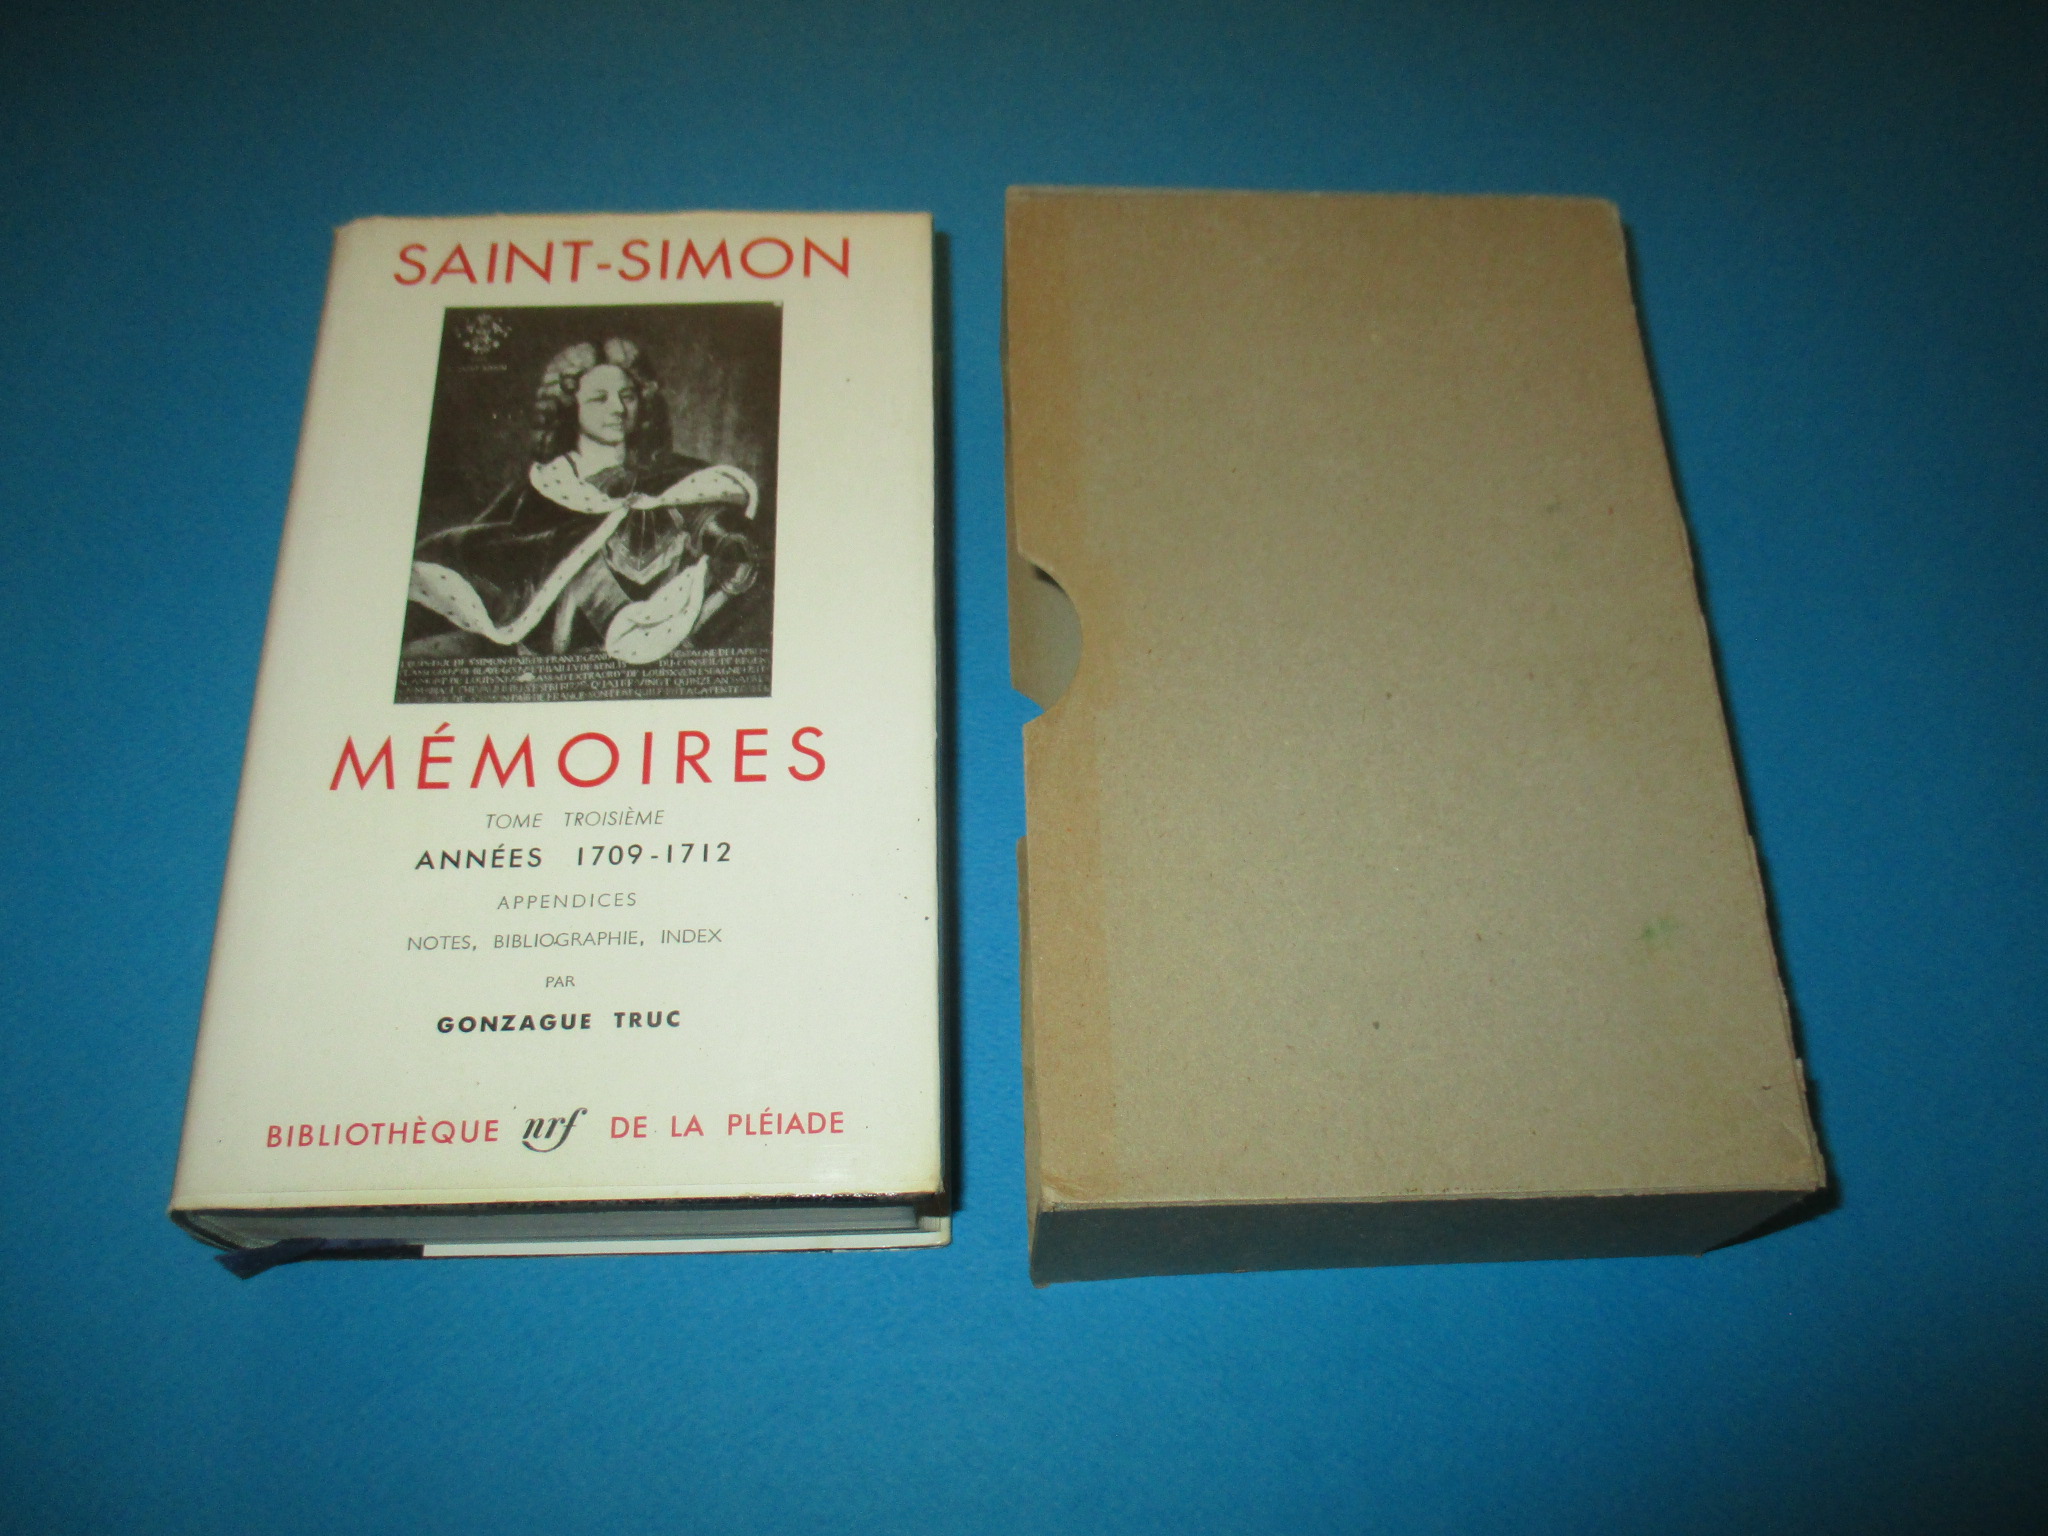 Saint-Simon, Mémoires III, Années 1709-1712, tome troisième, La Pléiade 1963